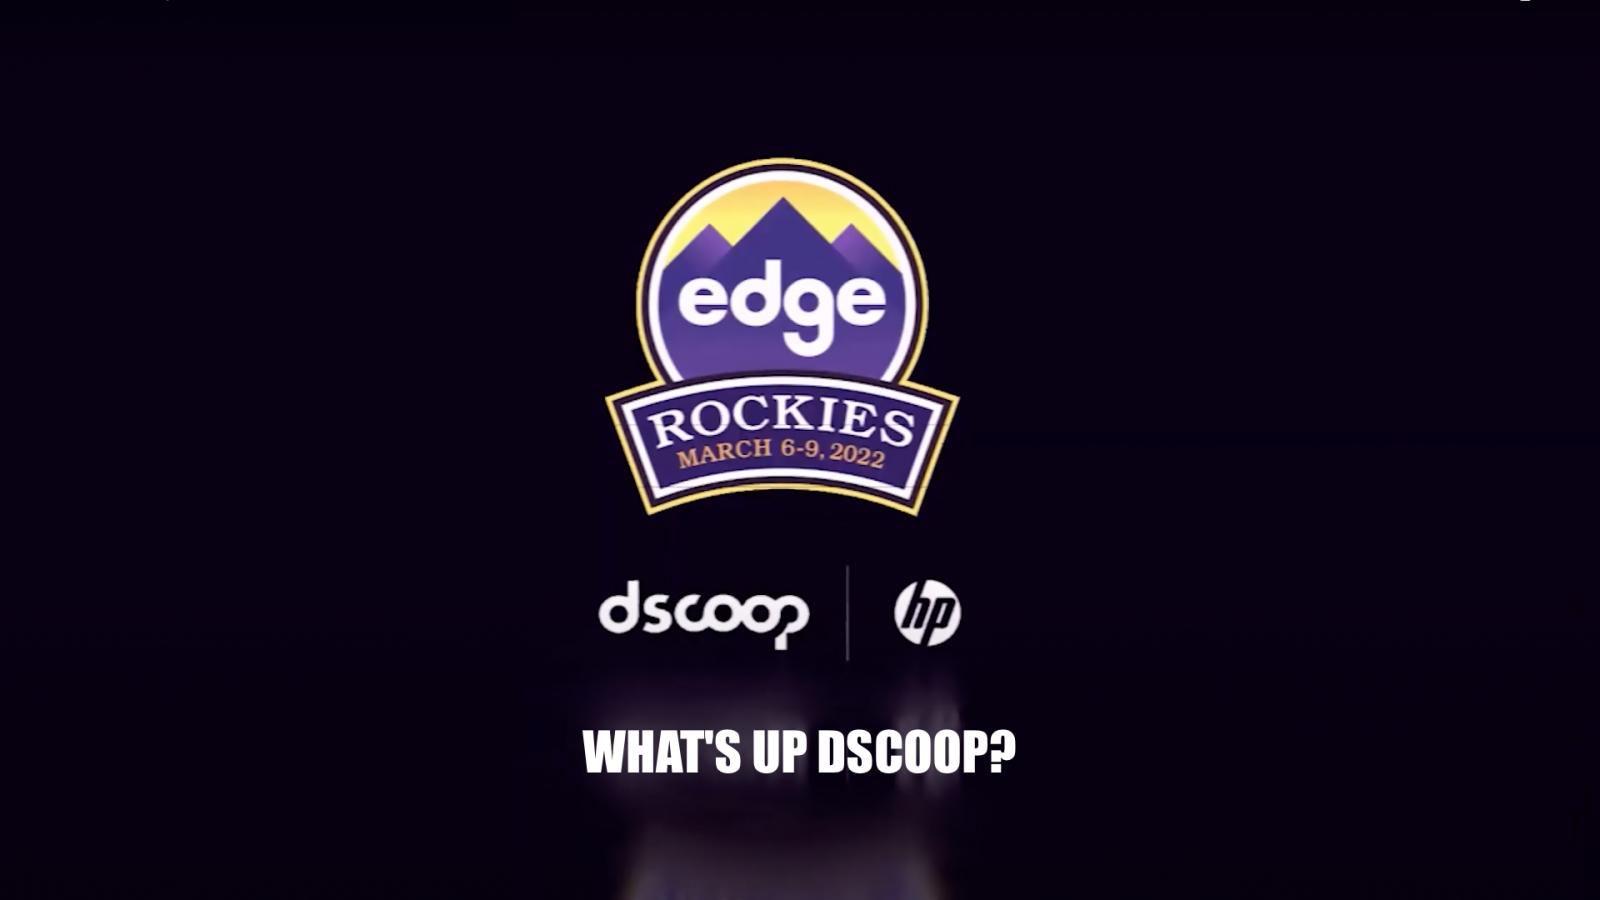 Dscoop #EdgeRockies 2022